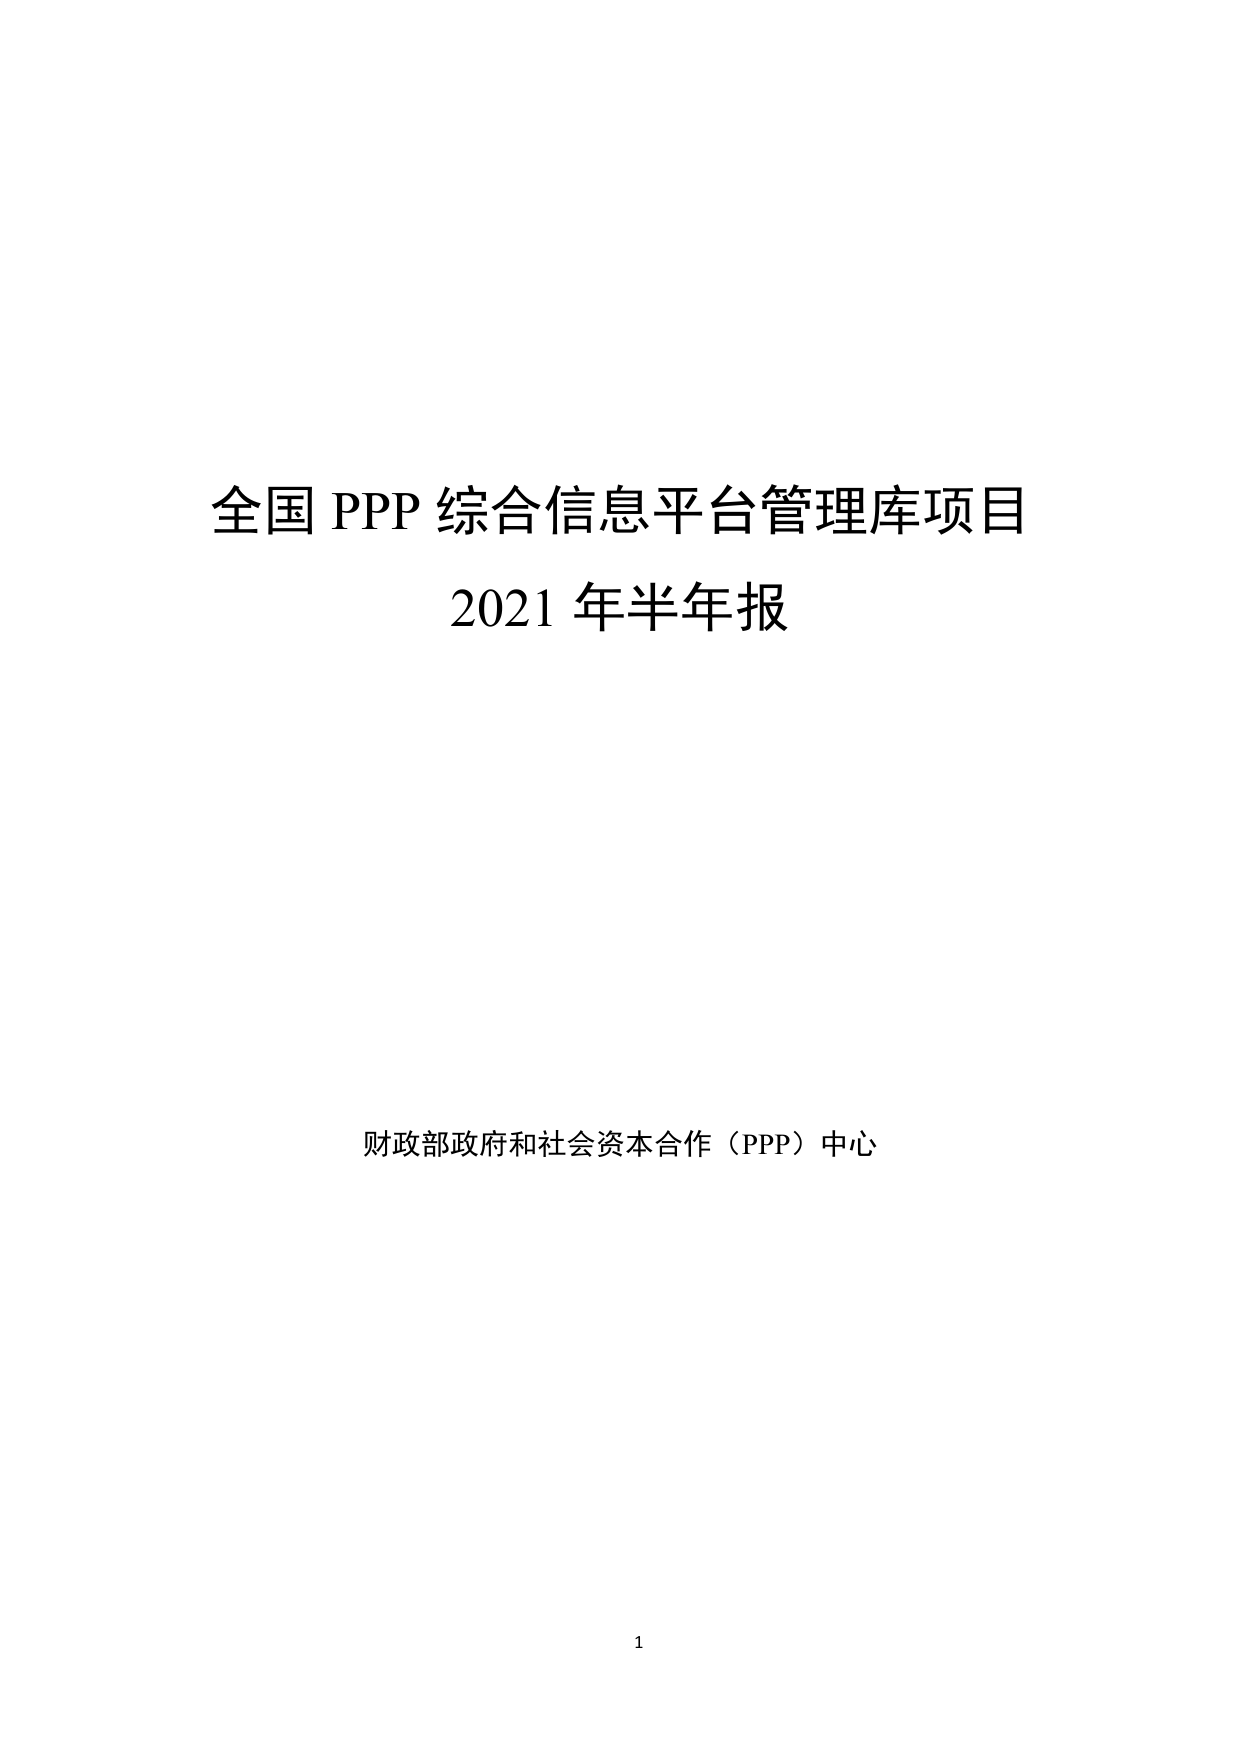 全国PPP综合信息平台管理库项目2021年半年报-财政部政府和社会资本合作（PPP）中心-2021-57页